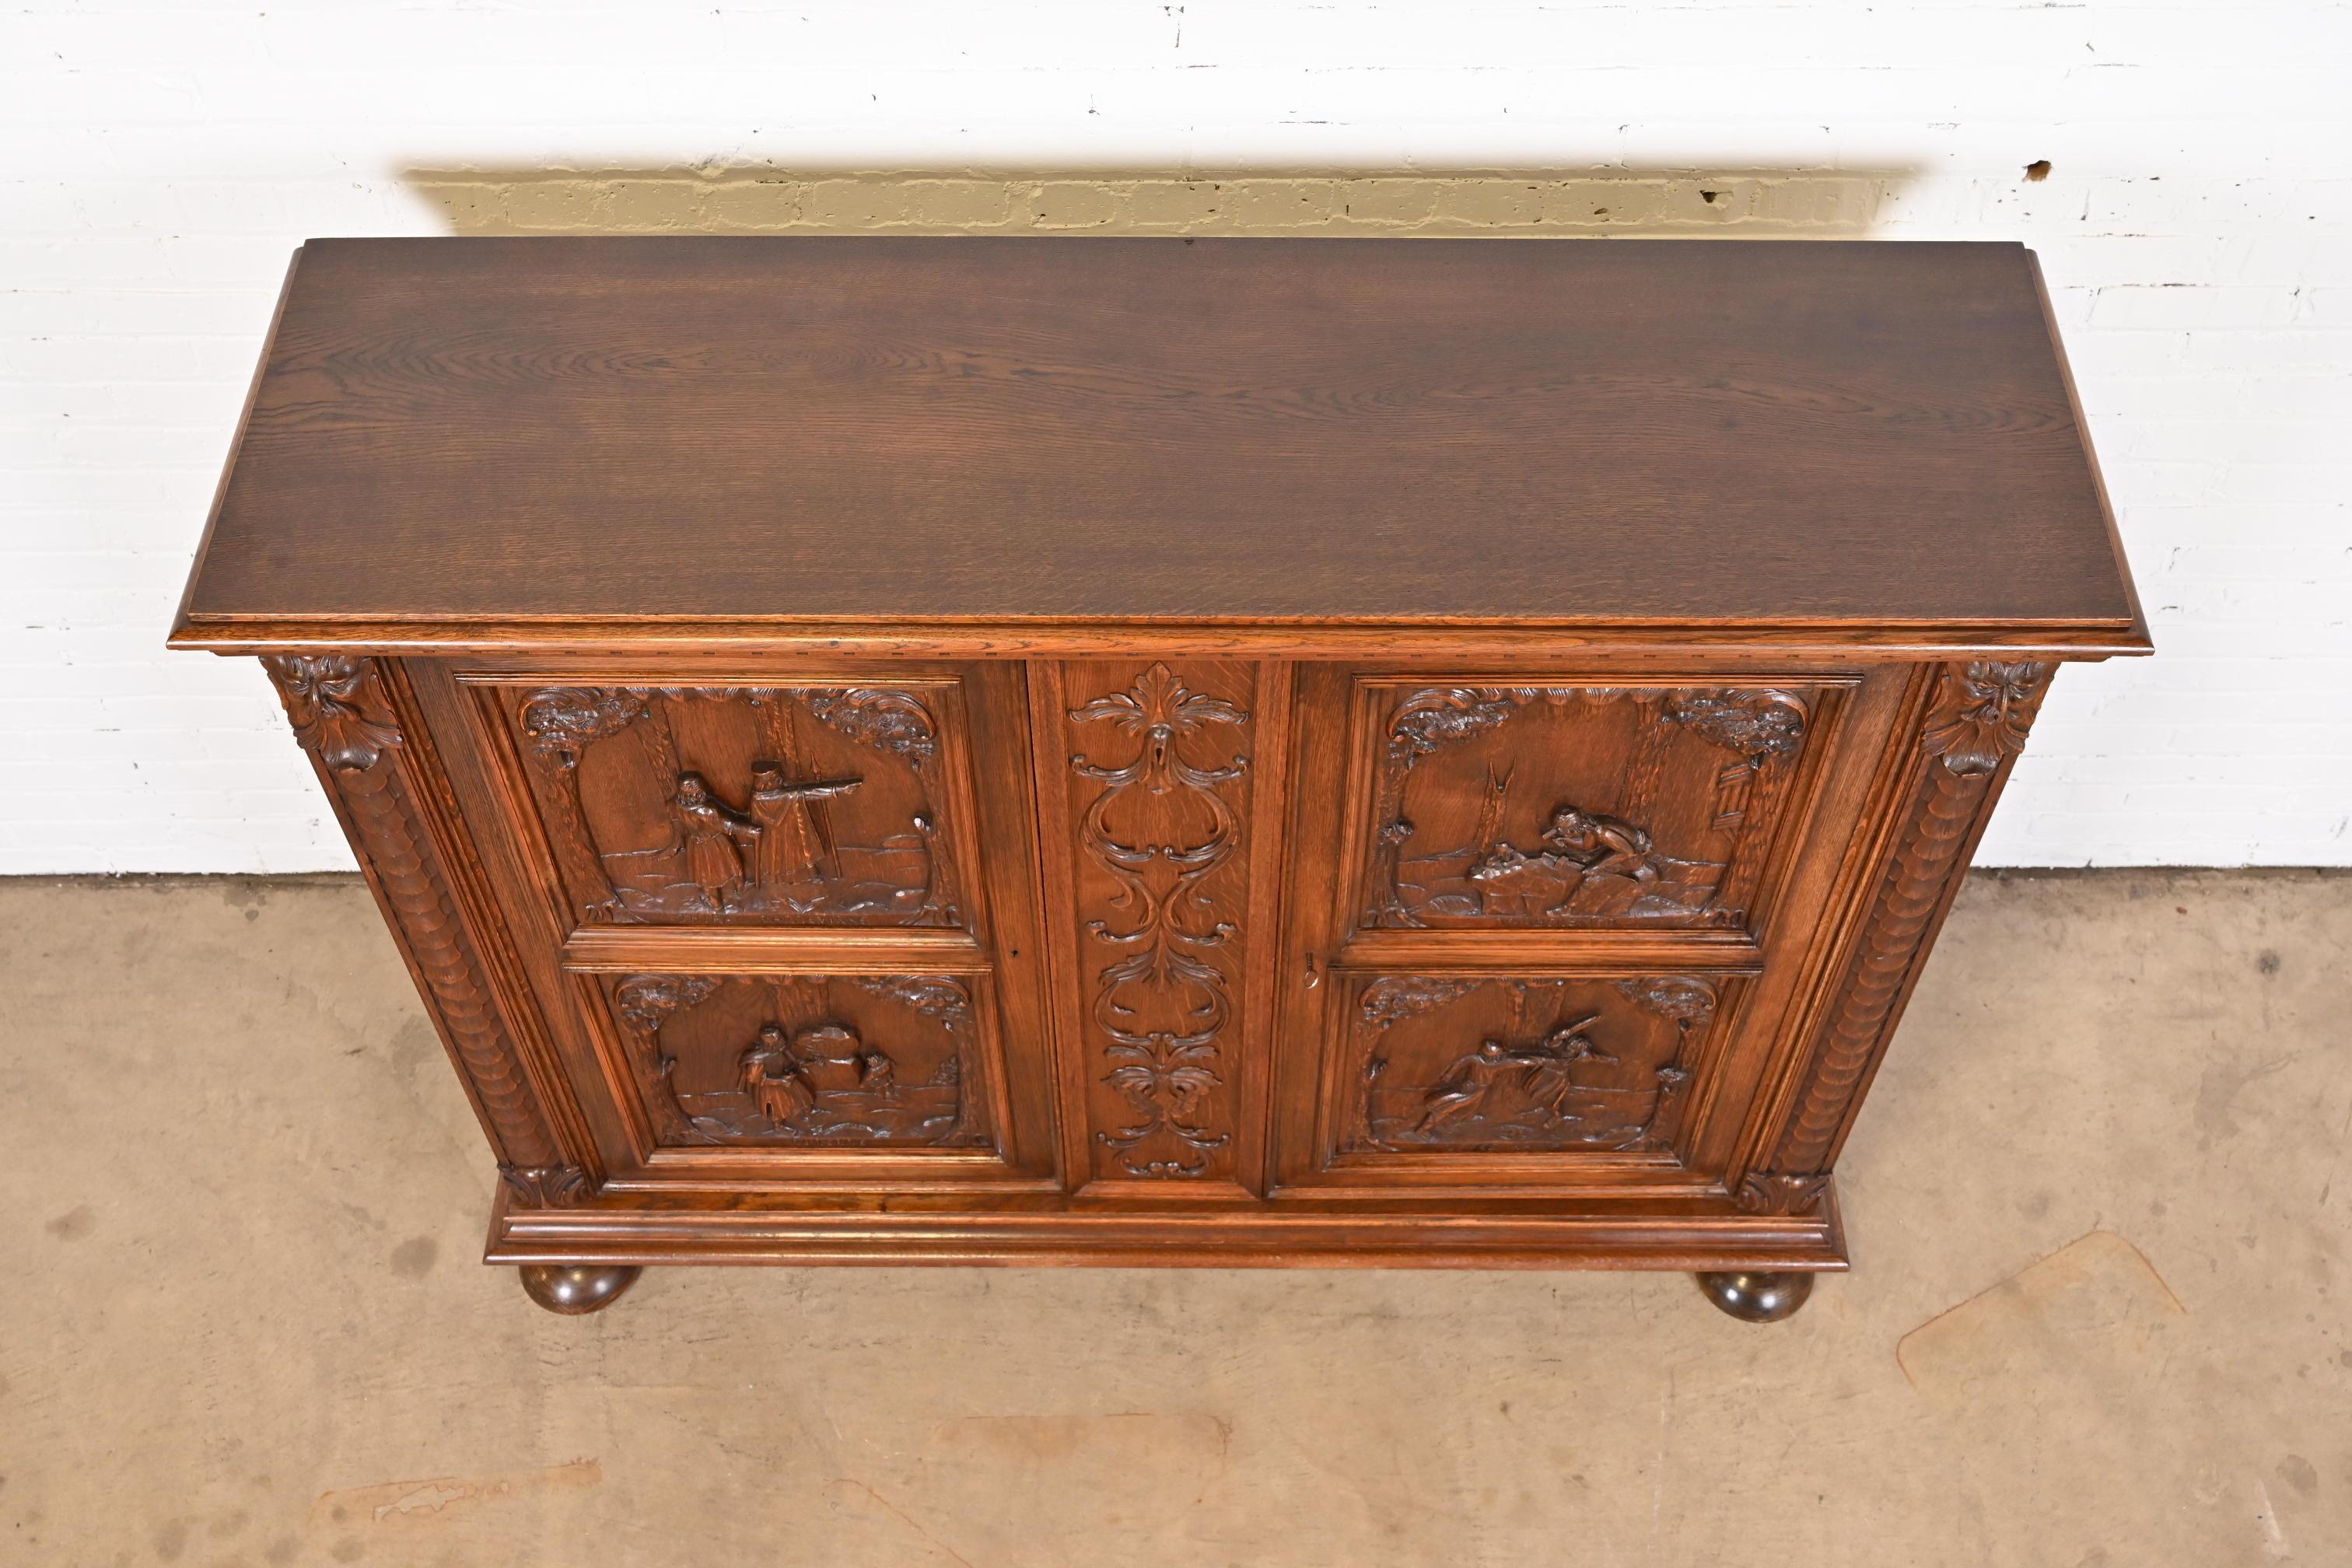 Antique Danish Renaissance Revival Ornate Carved Oak Sideboard or Bar Cabinet 13